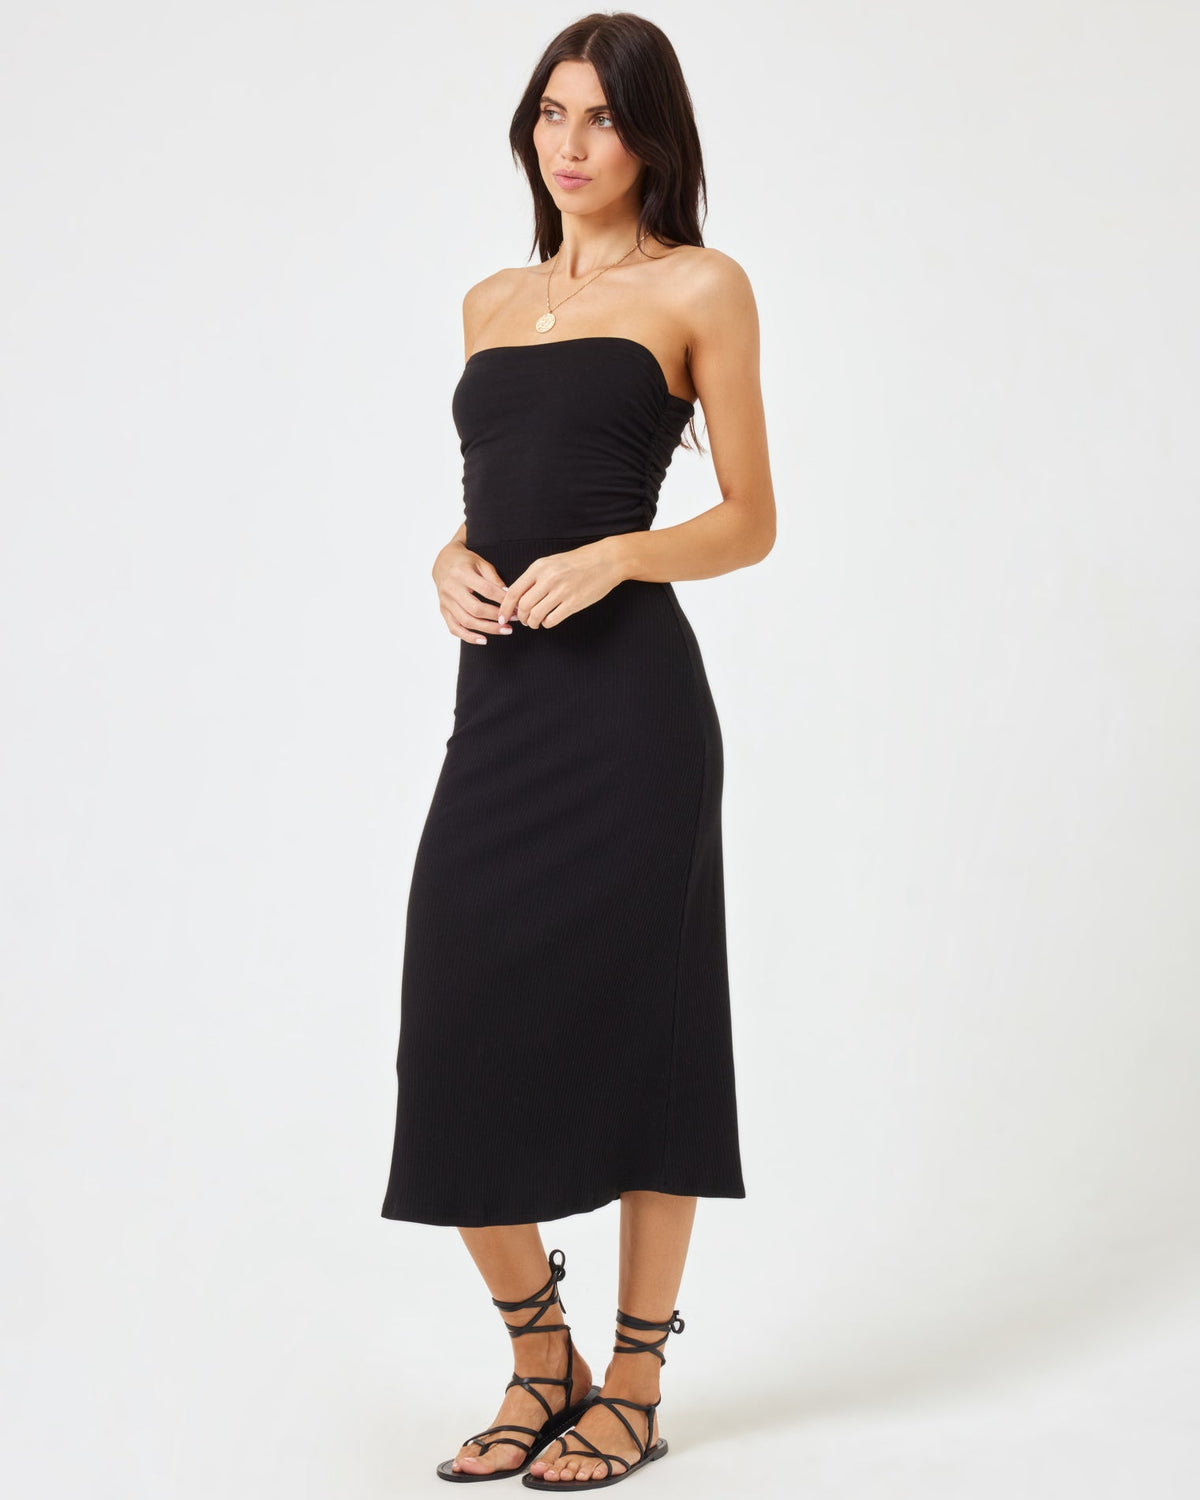 Manaia Dress Black | Model: Diana (size: S)